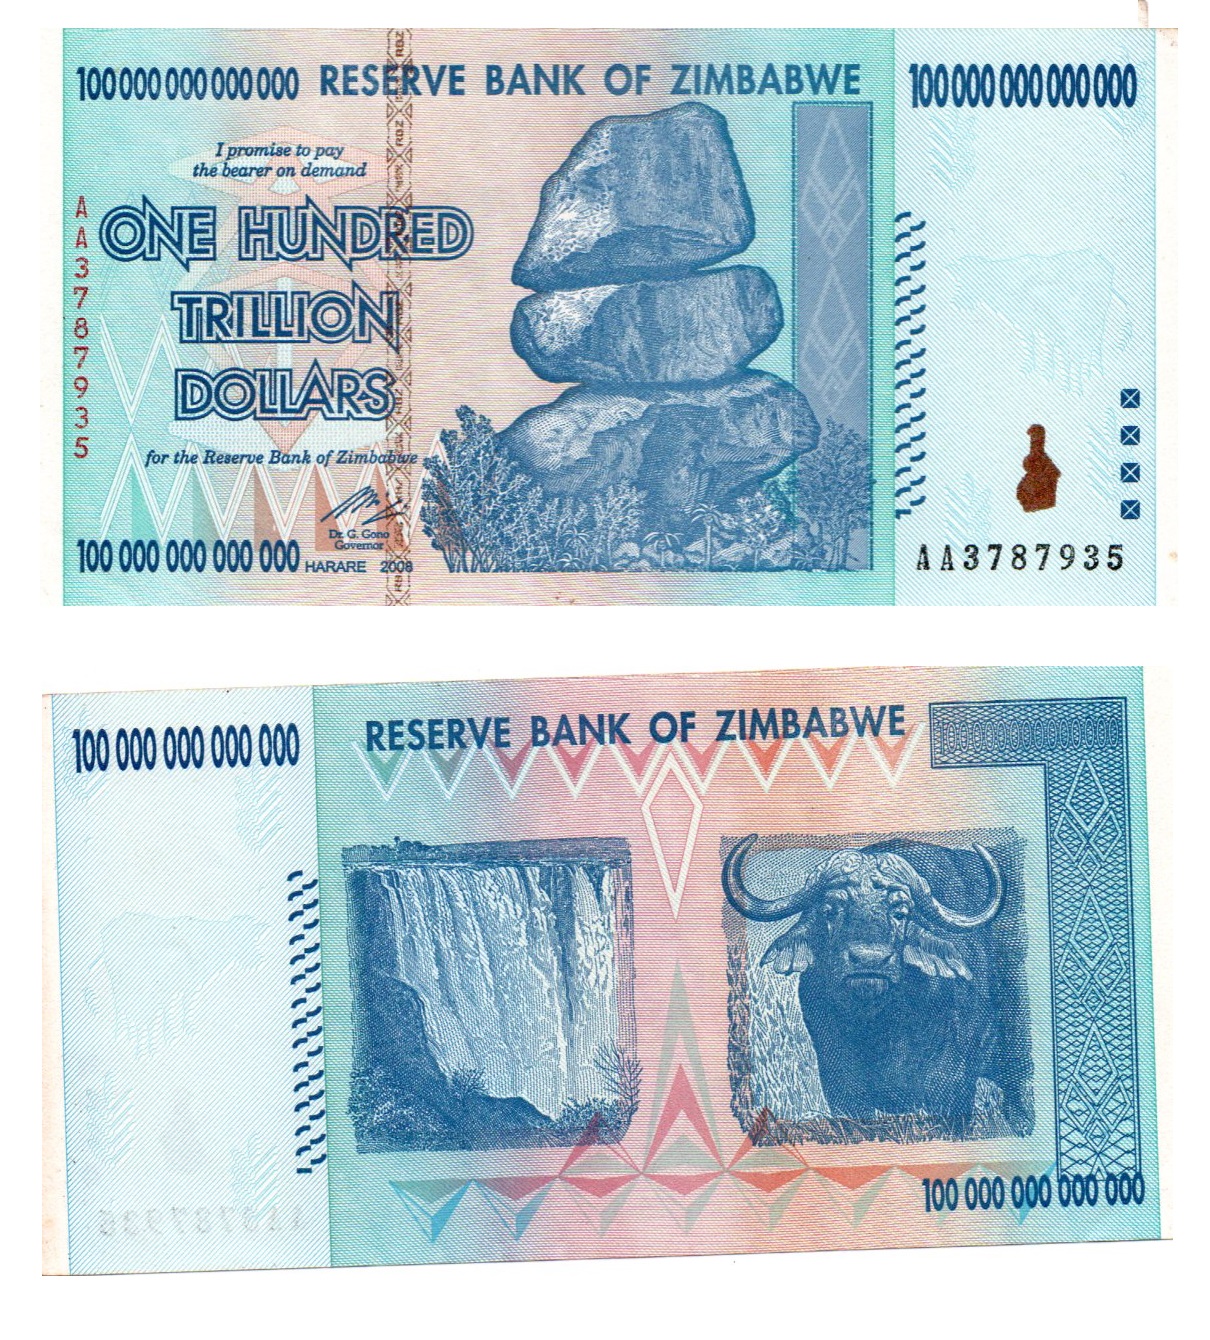 Zimbabwe #91 100 Trillion Dollars